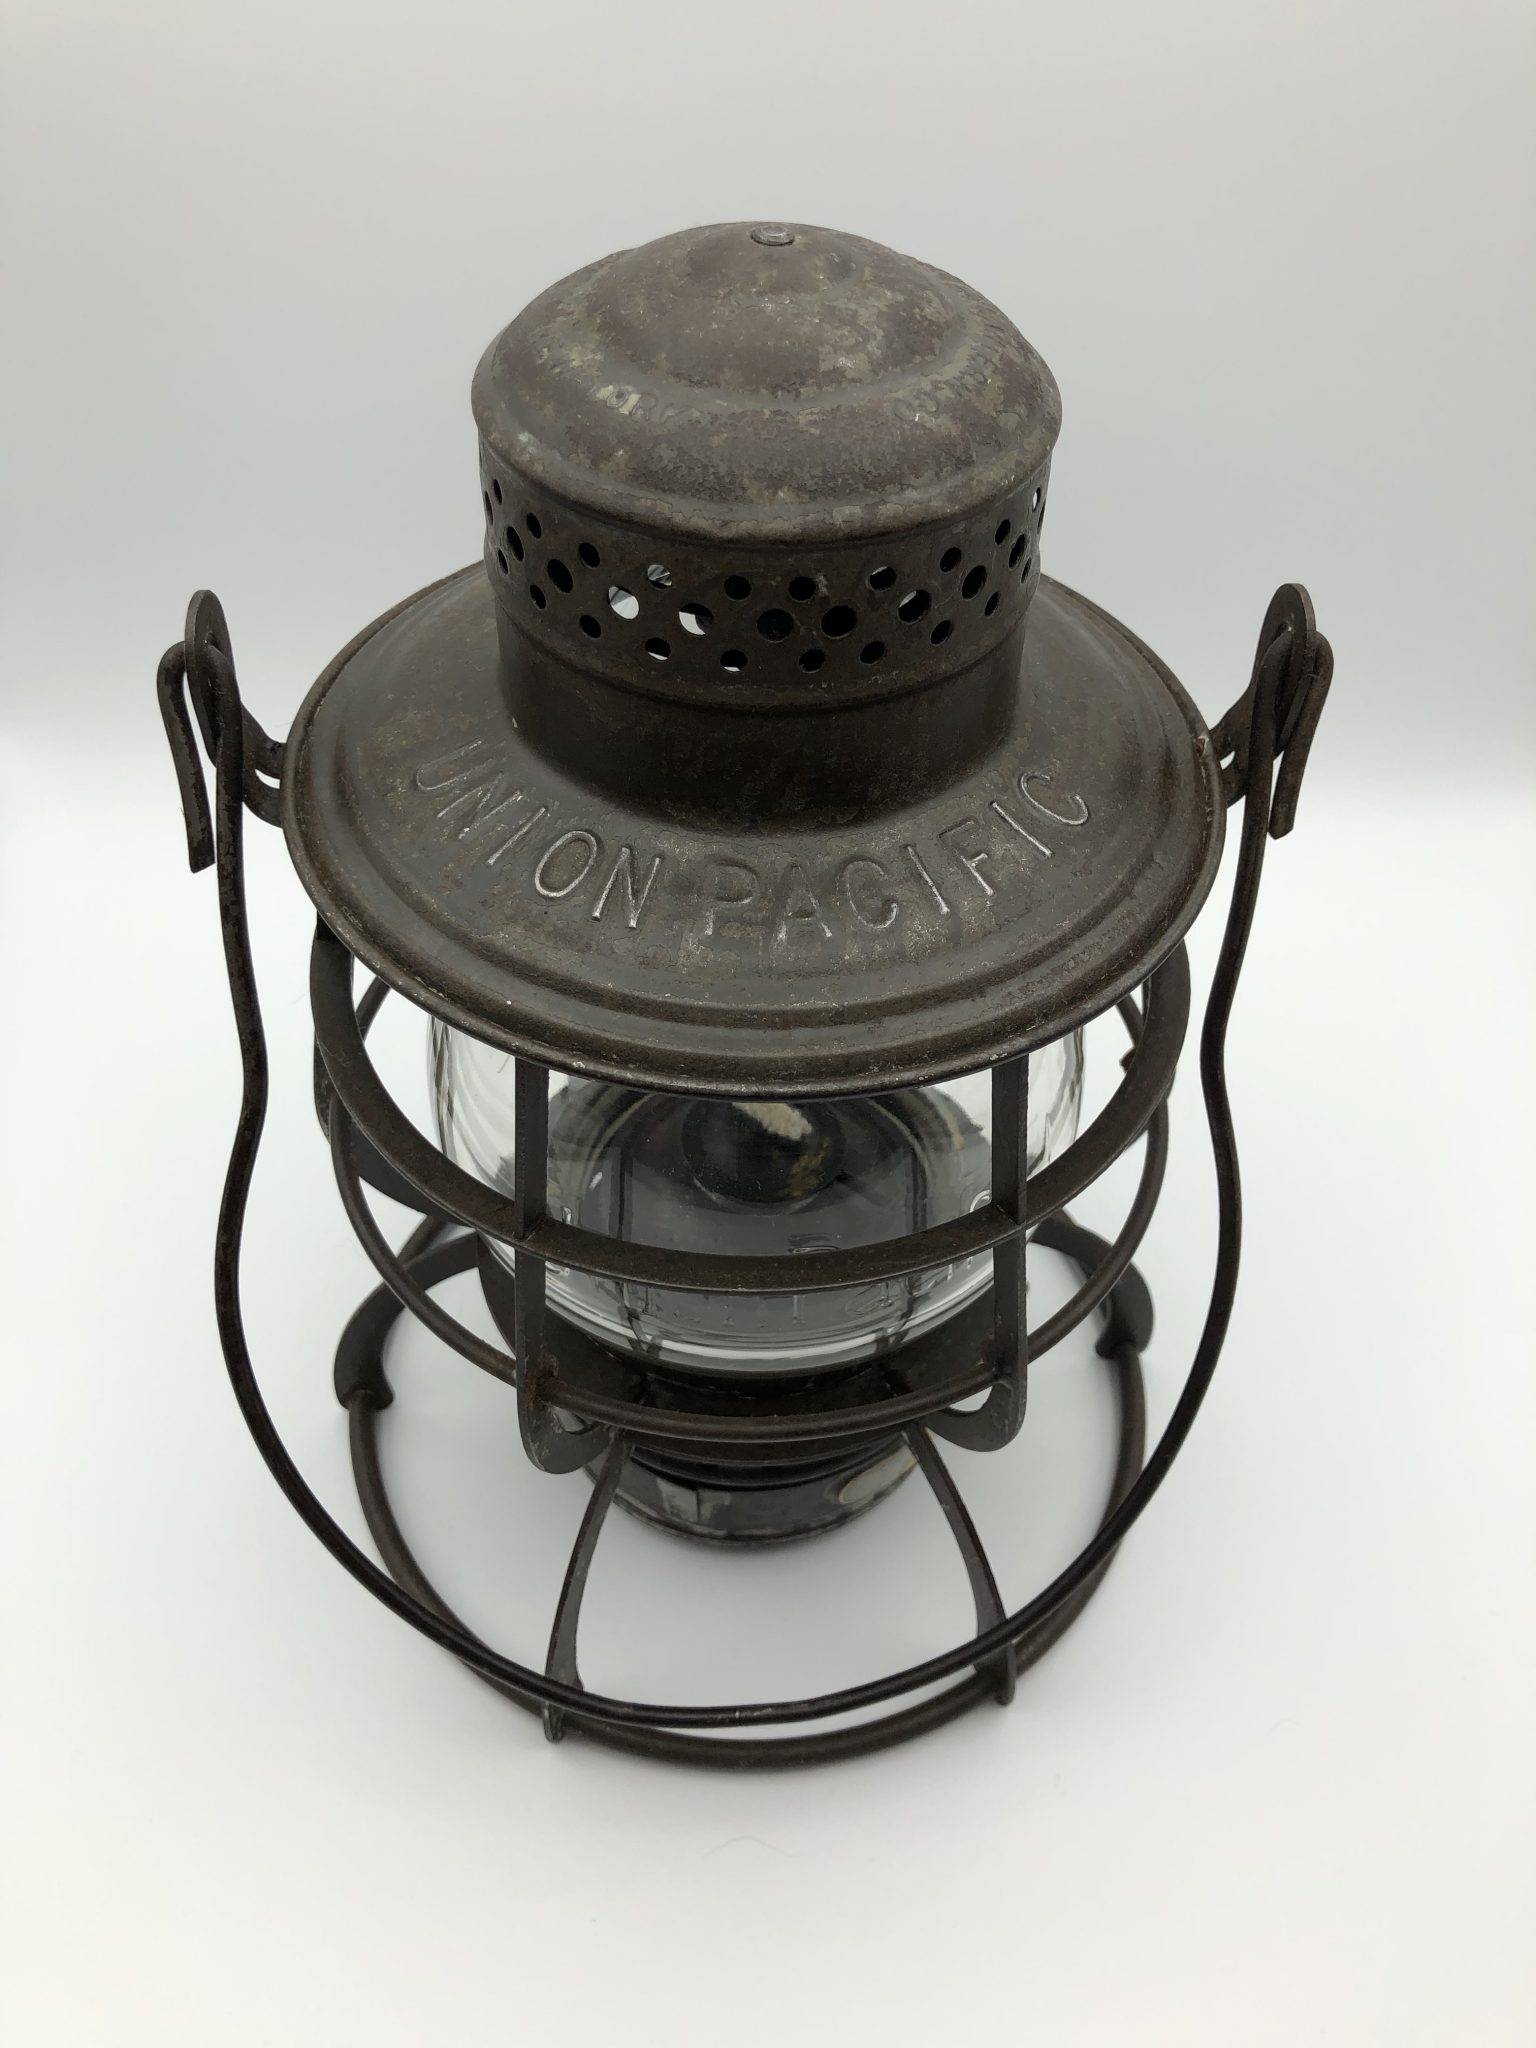 Union Pacific Railroad Lantern